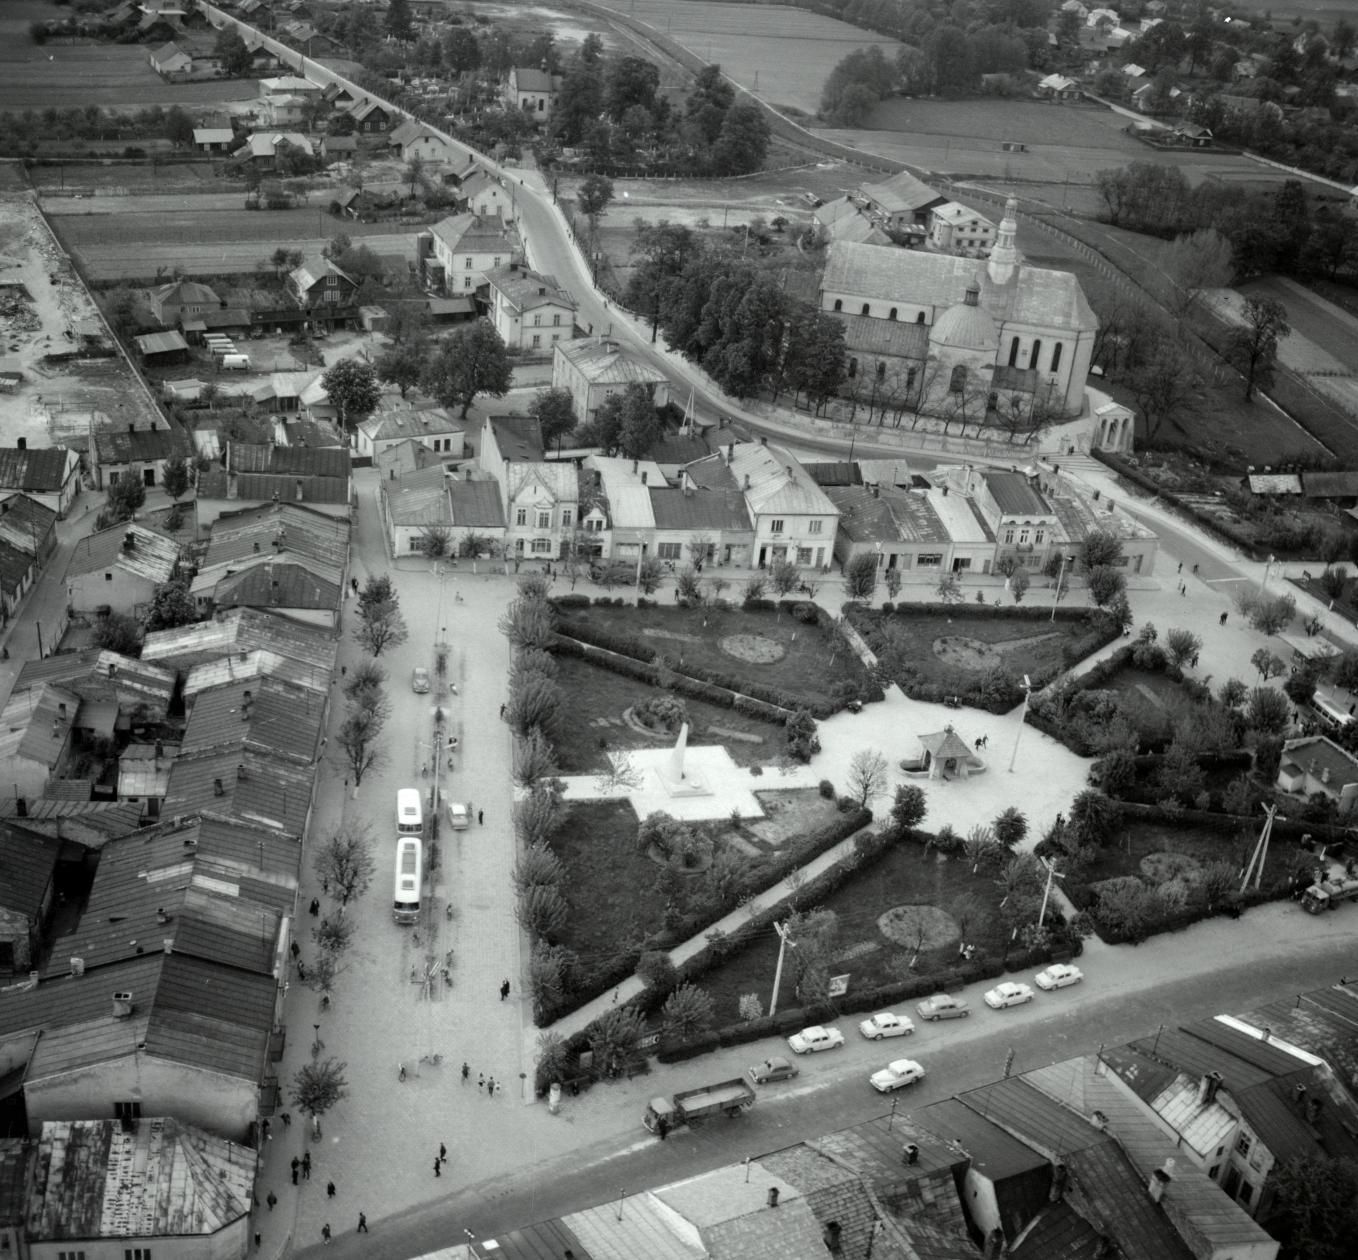 Kiedyś centrum Kolbuszowej było... skwerem. Zobacz zdjęcia lotnicze miasta z 1967 roku - zdjęcie nr 4.